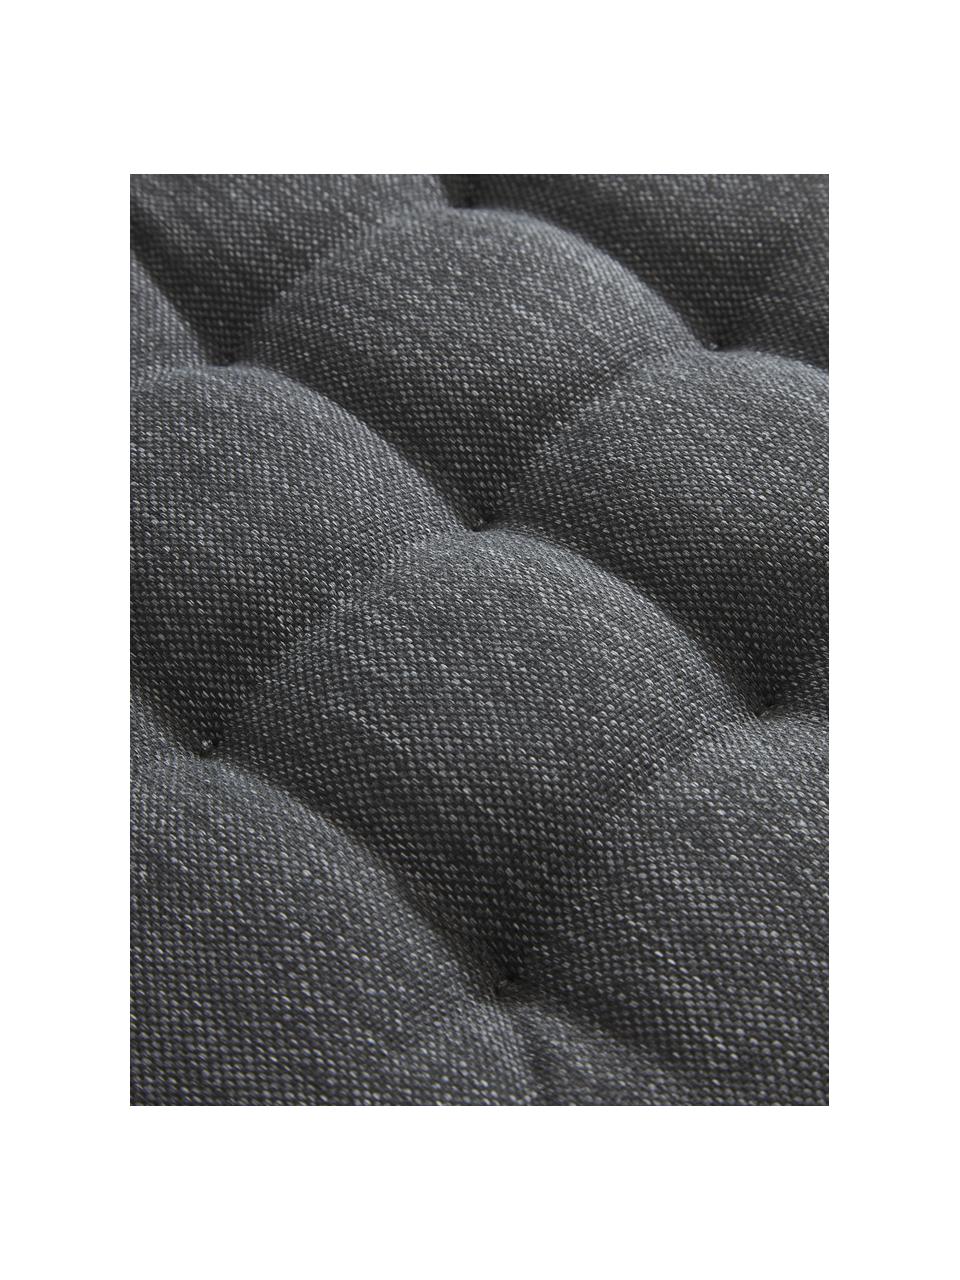 Venkovní podsedák na židli Olef, 100 % bavlna, Tmavě šedá, Š 40 cm, D 40 cm